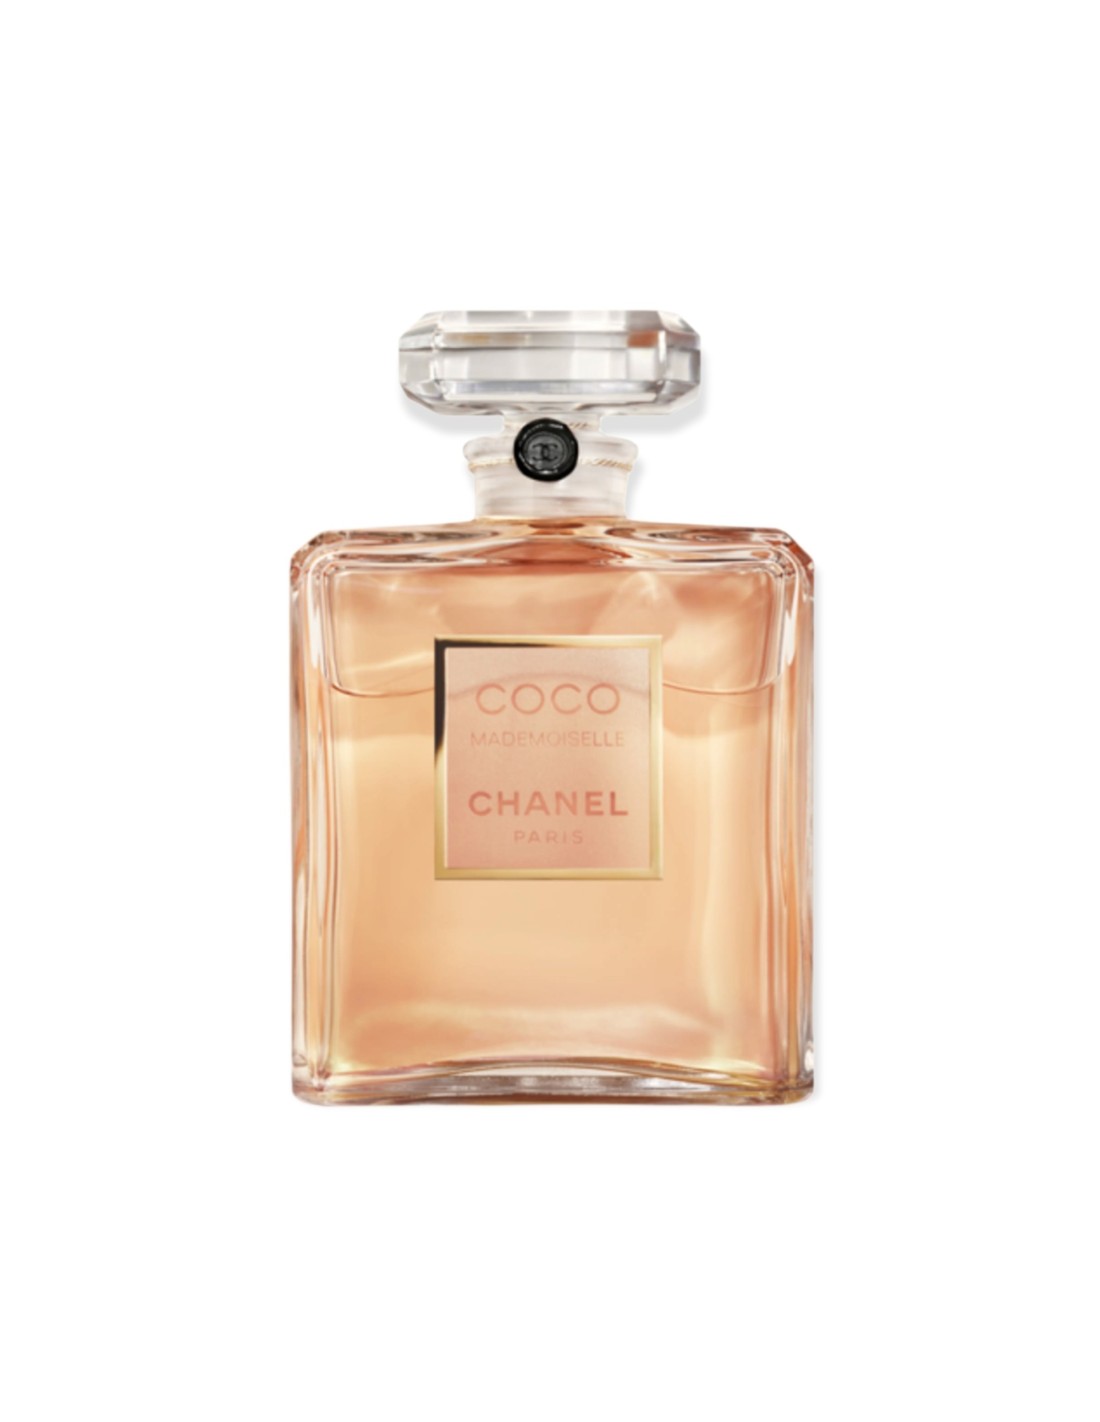 Chanel Coco Modemoiselle 100 ml eau de parfum Tester